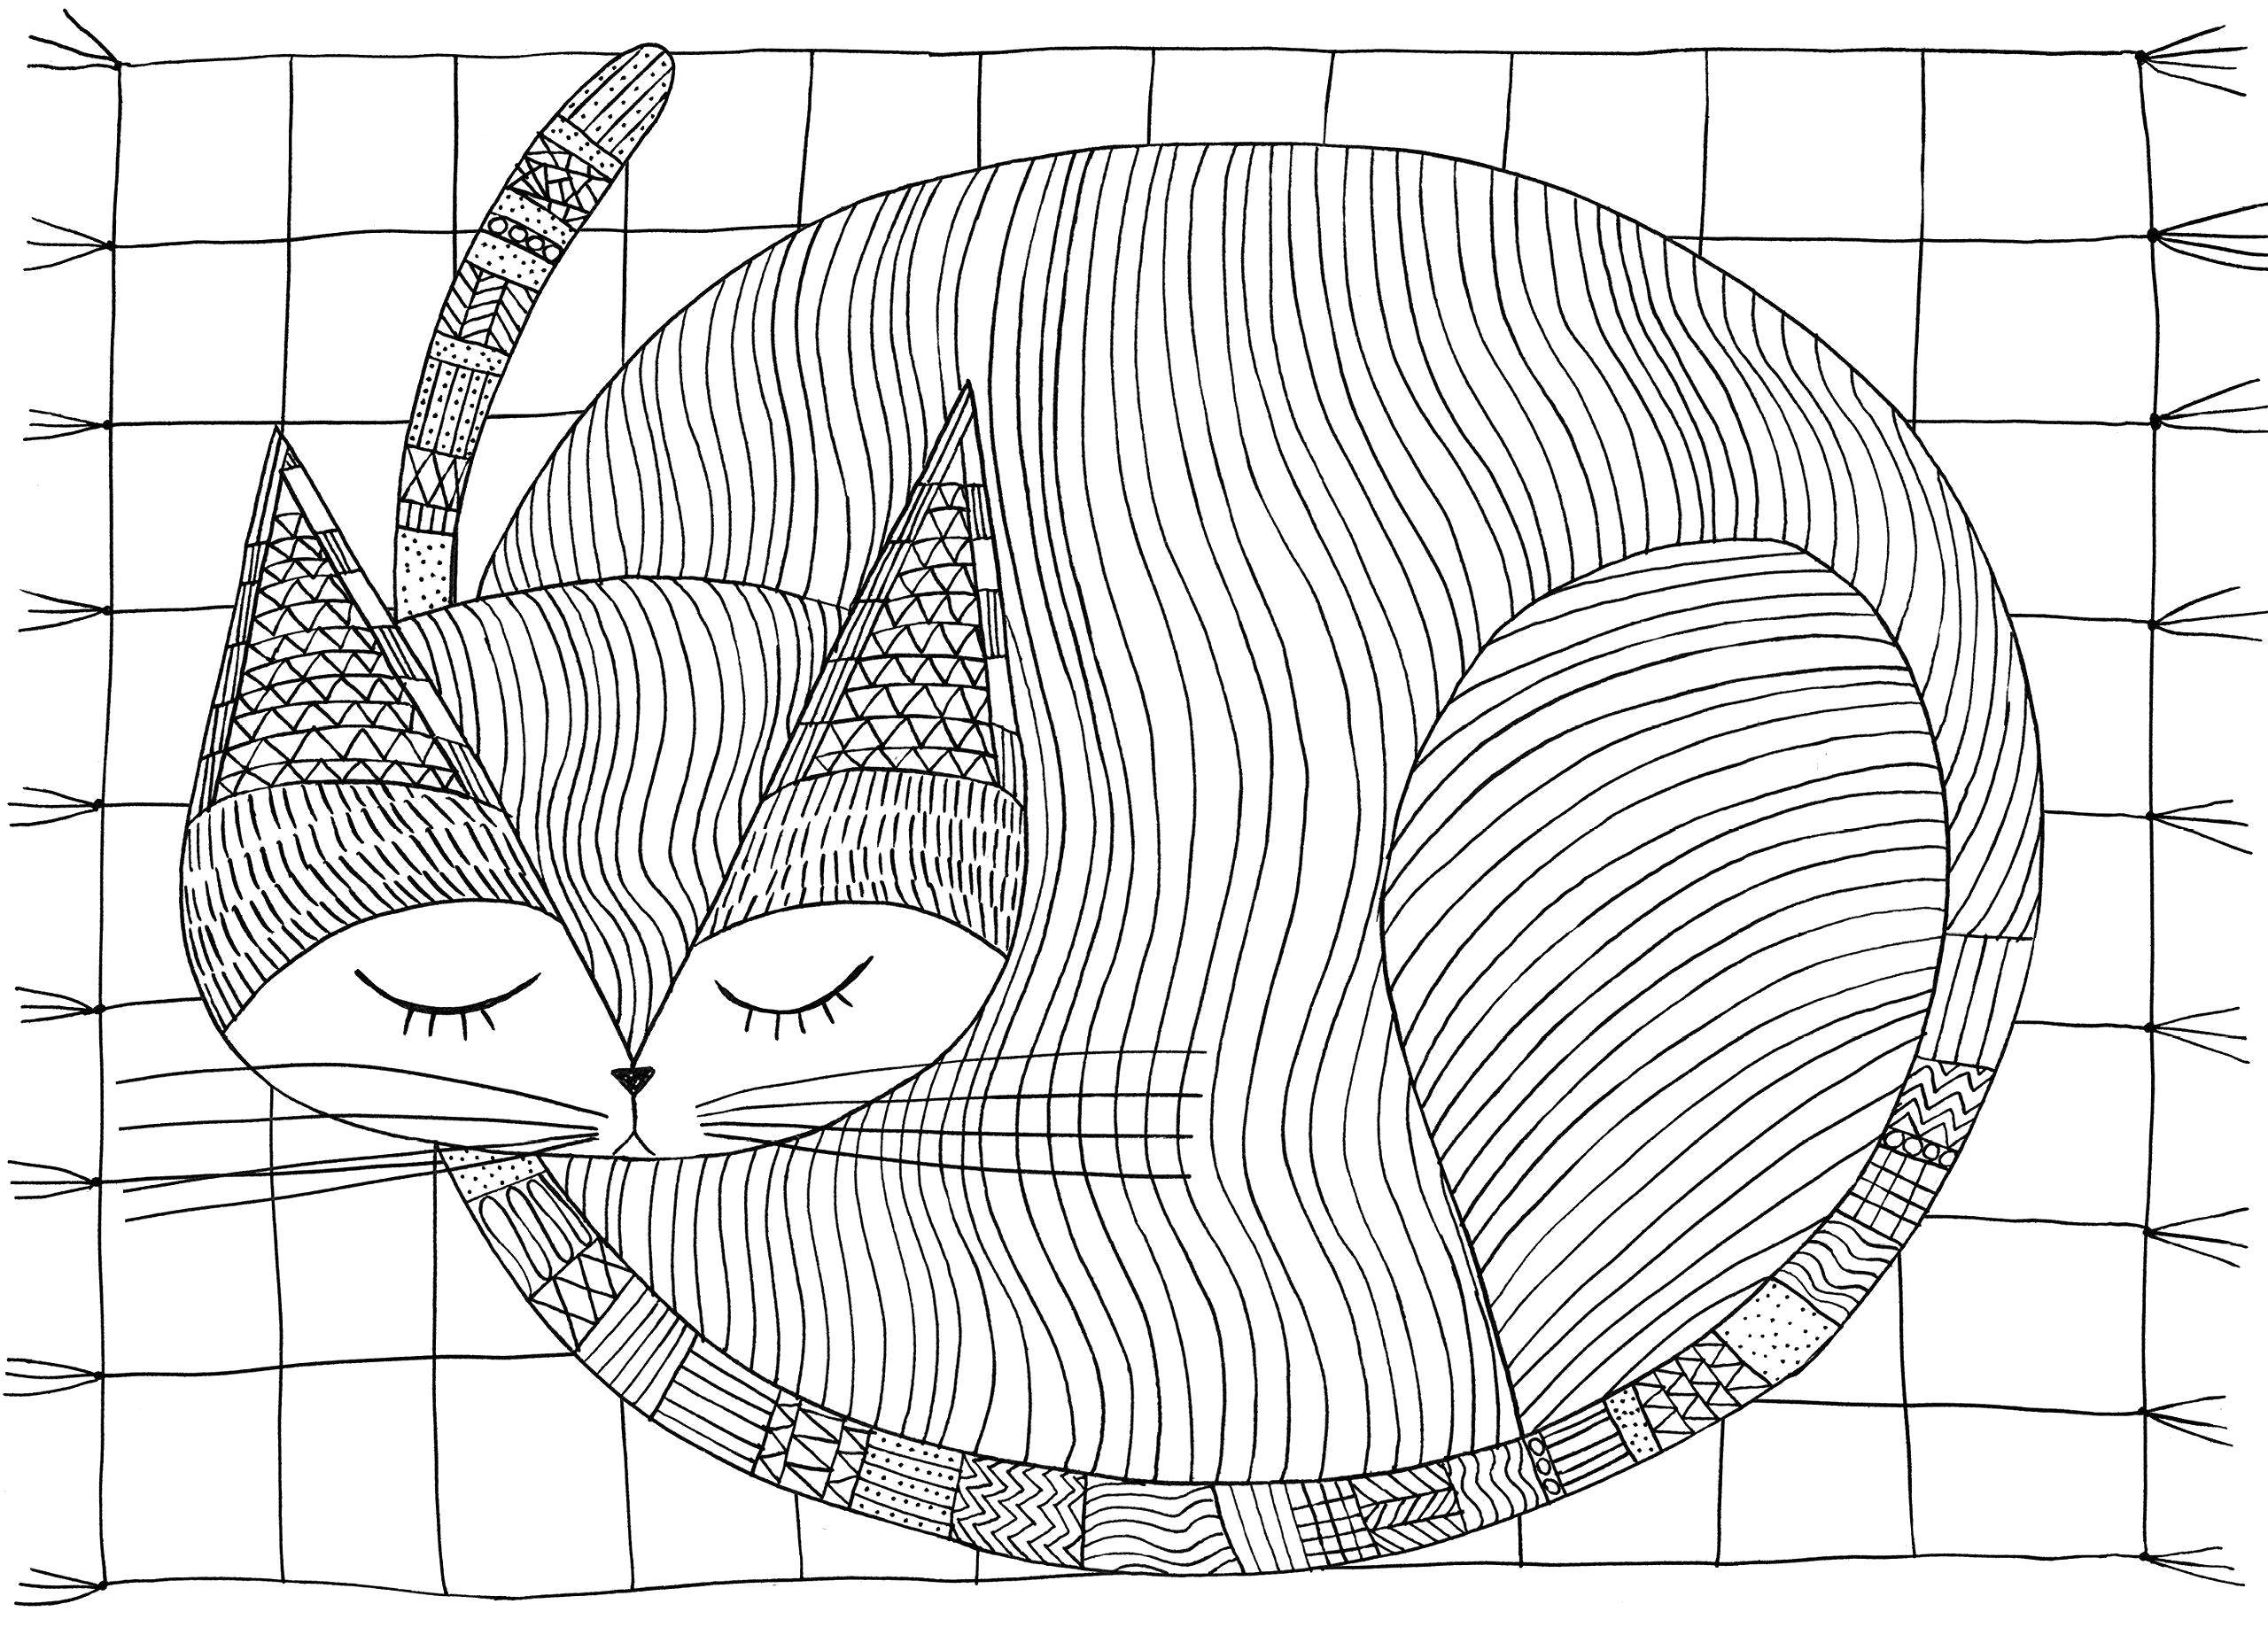 Название: Раскраска Кот из геометрических узоров спит на ковре. Категория: узоры. Теги: Узоры, геометрические, животные , кот.